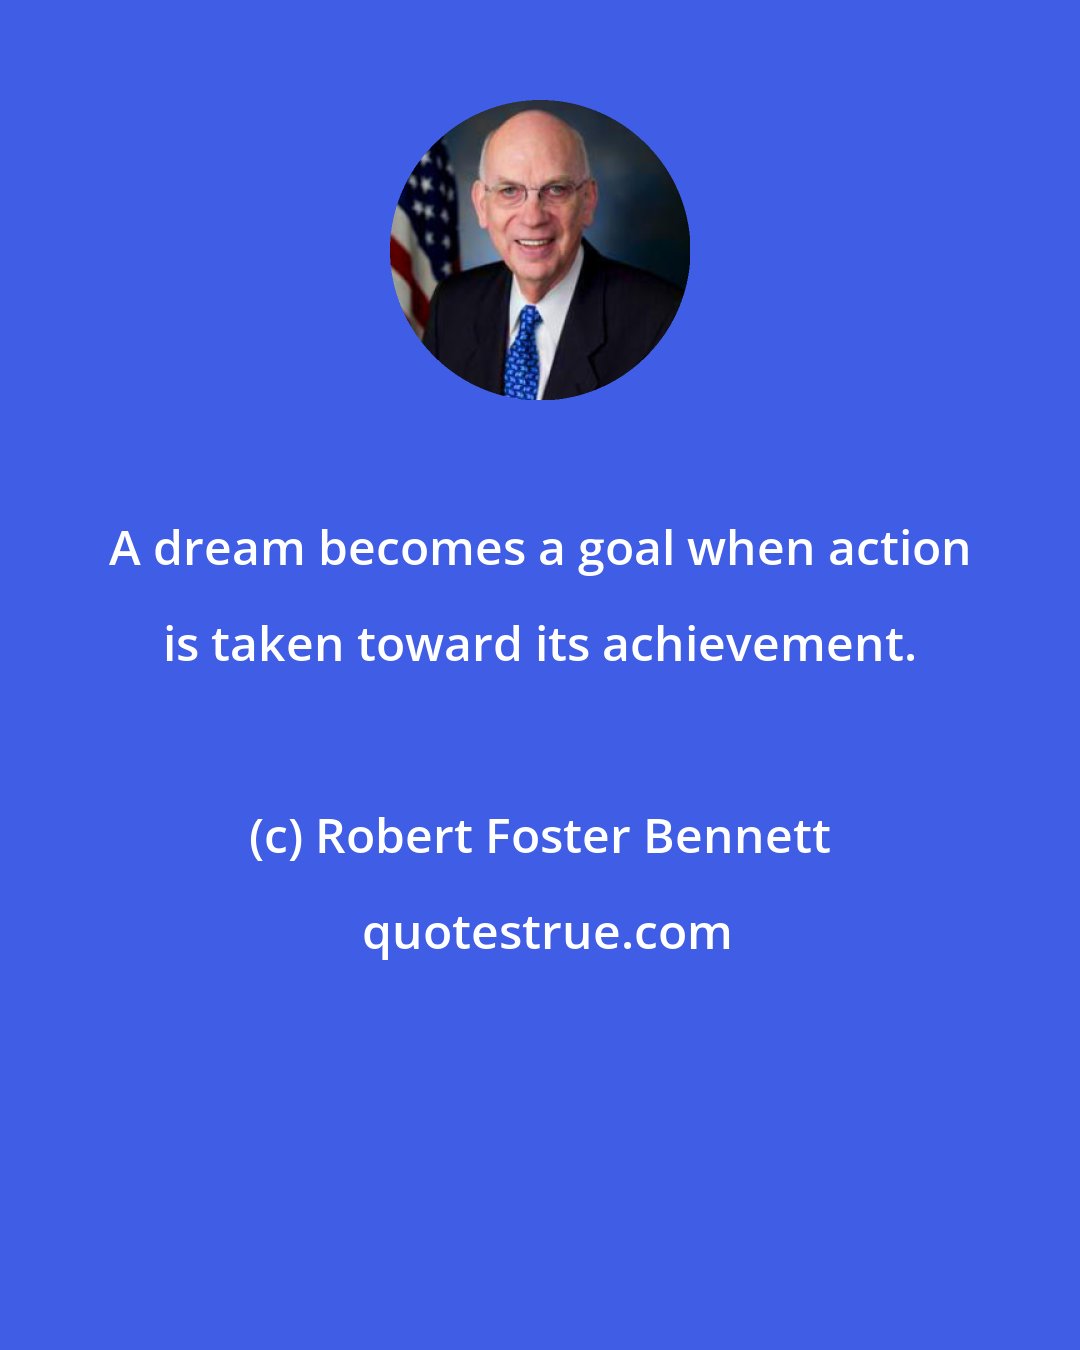 Robert Foster Bennett: A dream becomes a goal when action is taken toward its achievement.